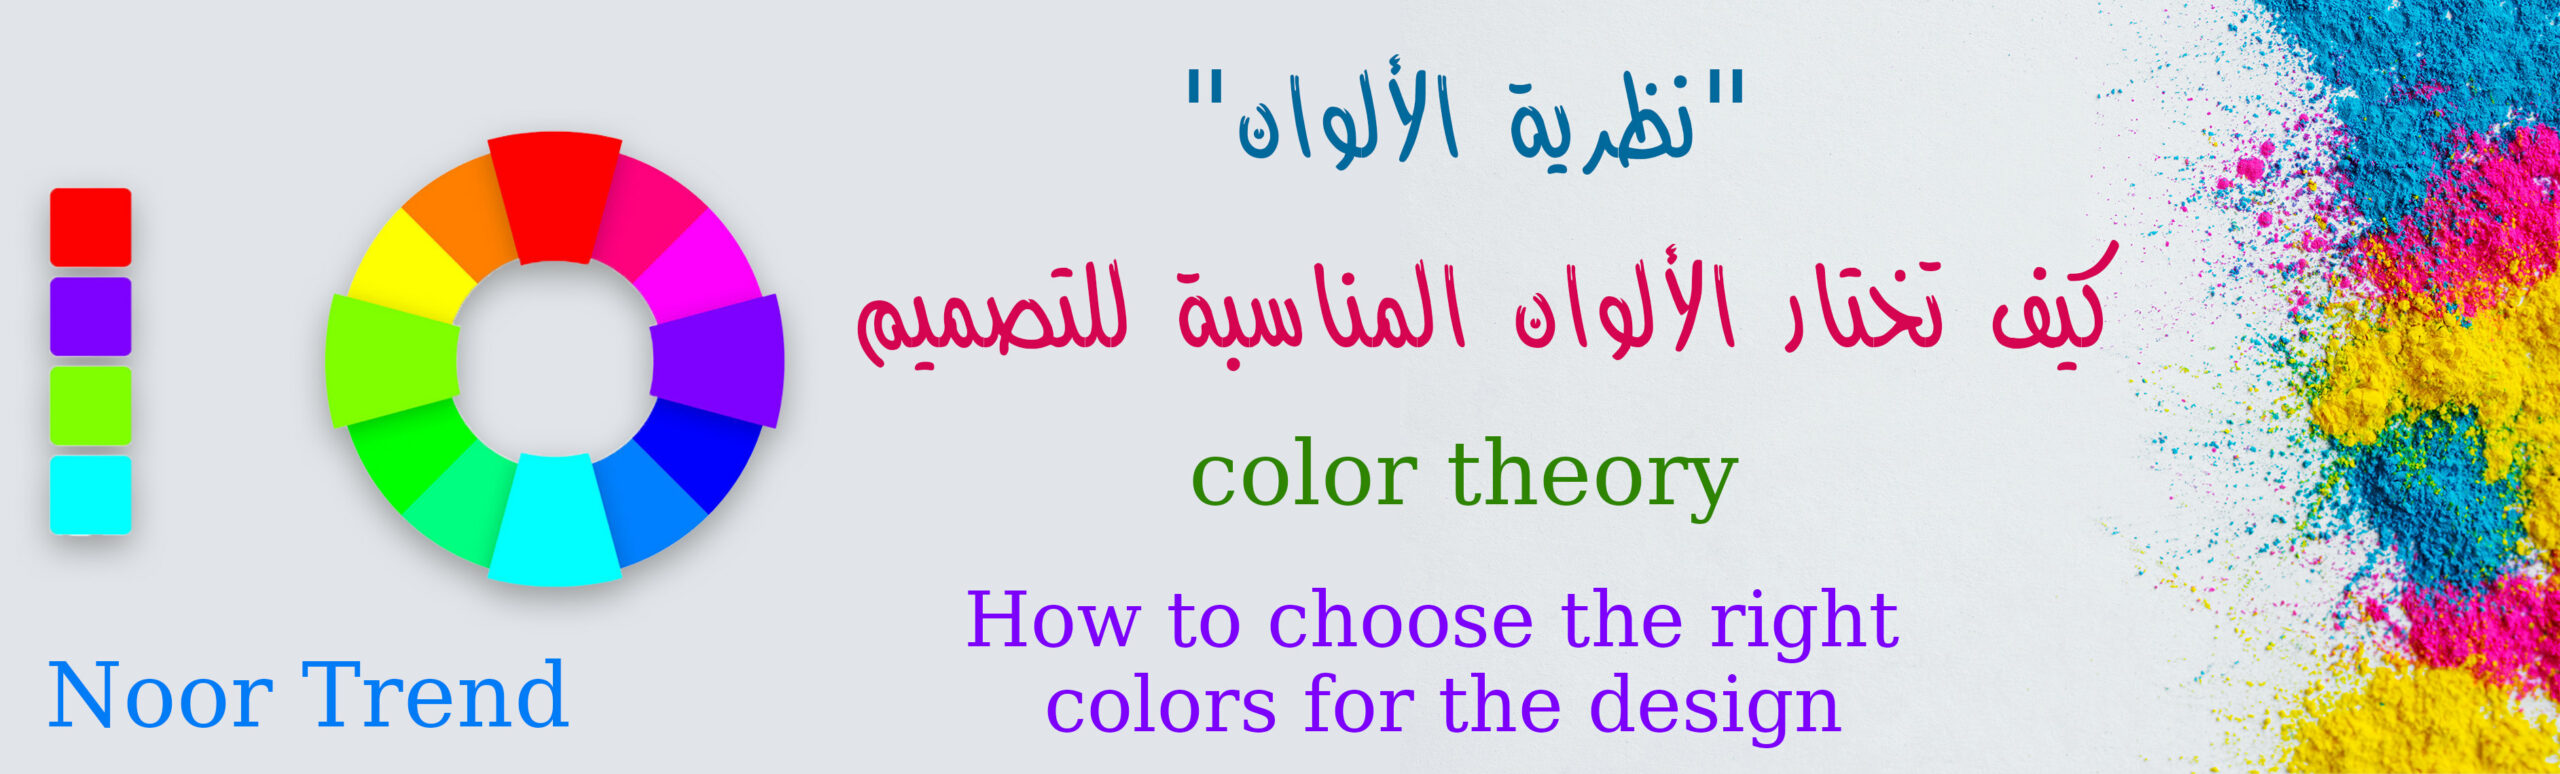 نظرية الألوان كيف تختار الألوان المناسبة للتصميم